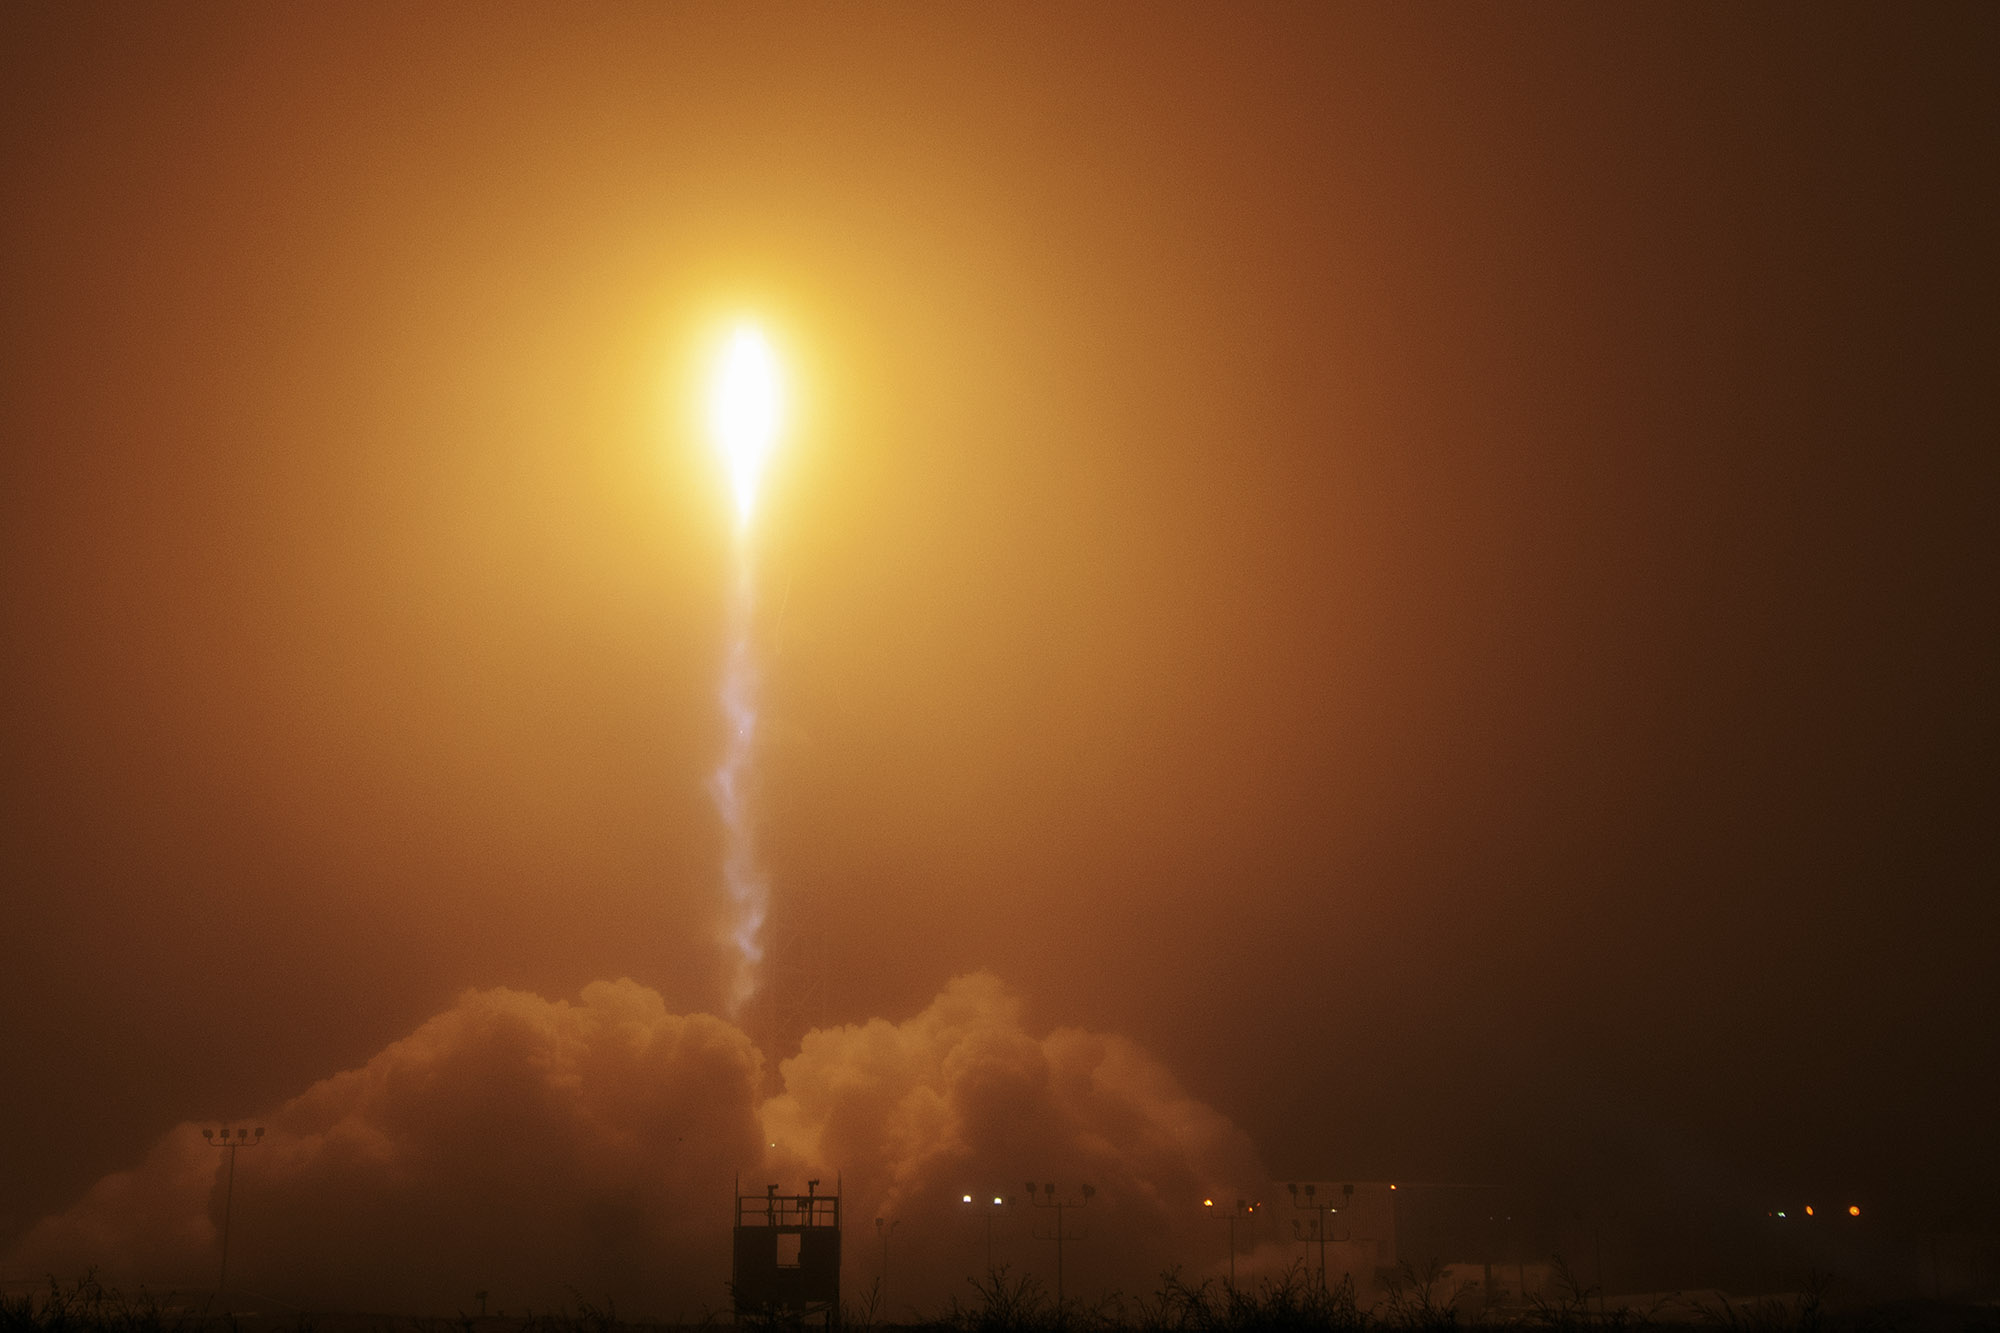 Atlas V rocket lifts off